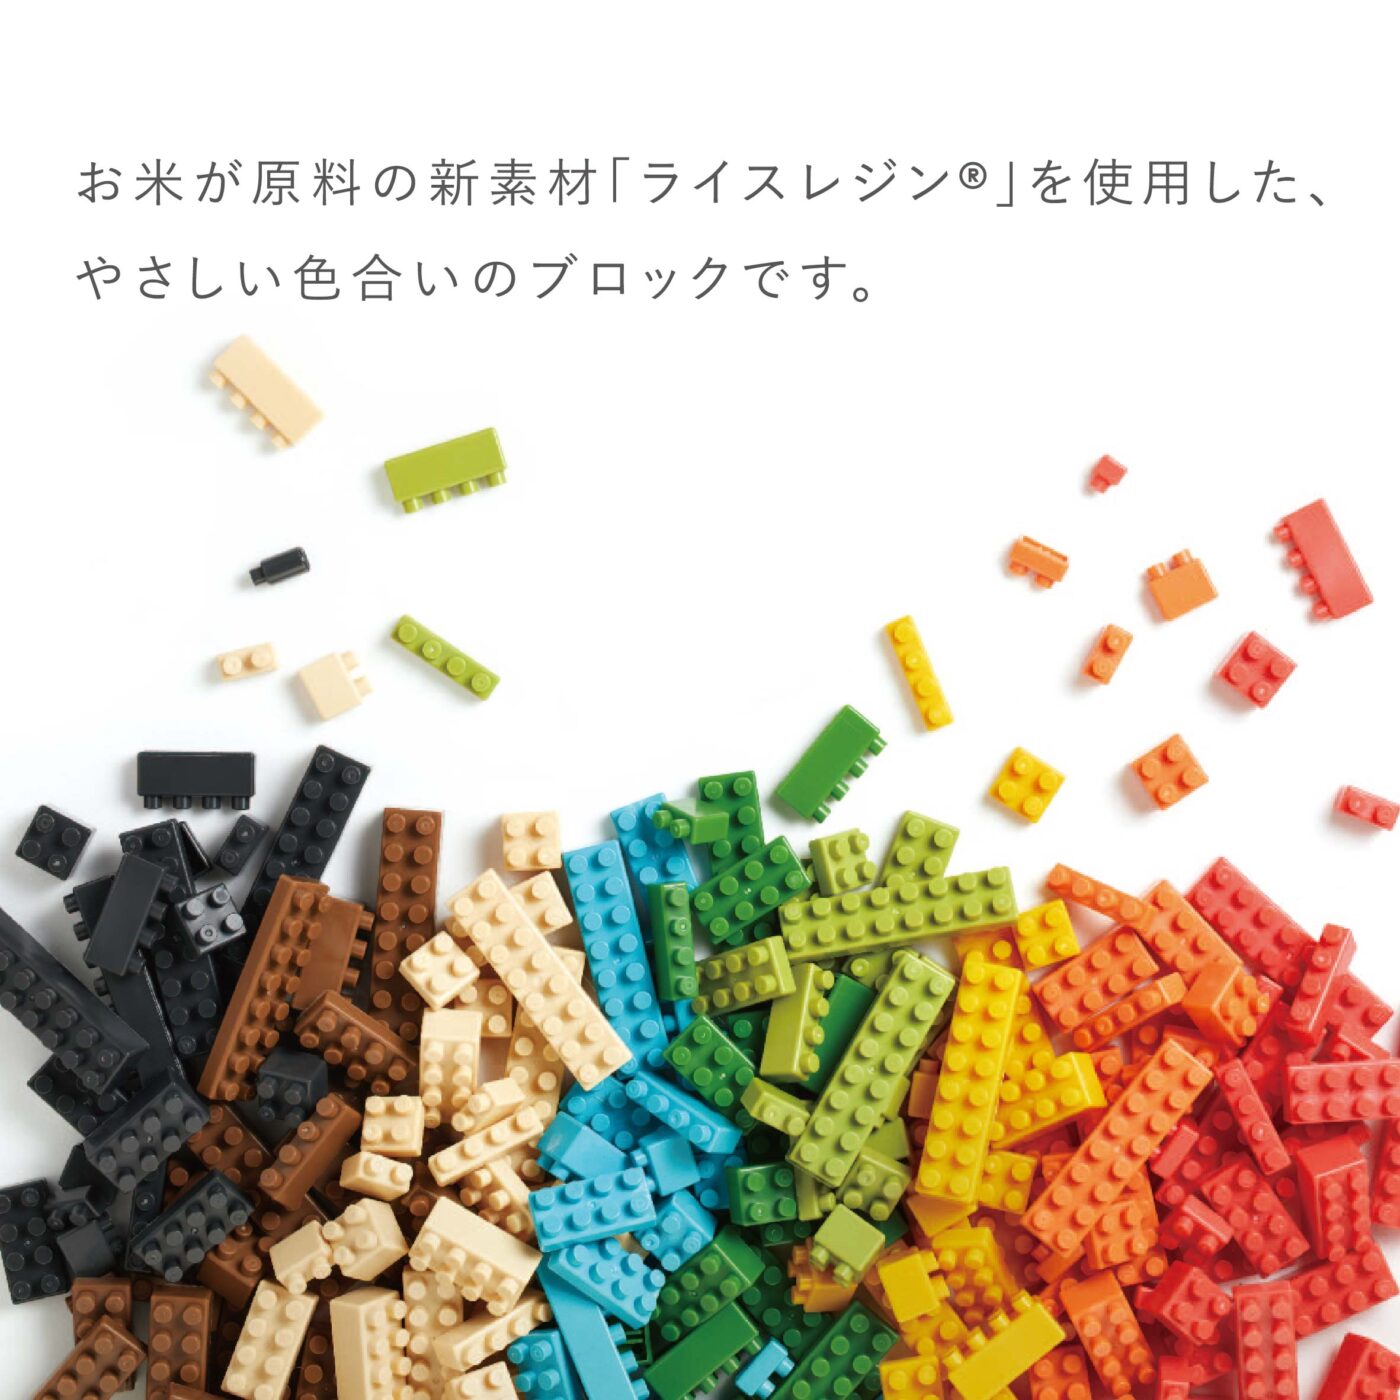 Product image of OKOMEIRO L3